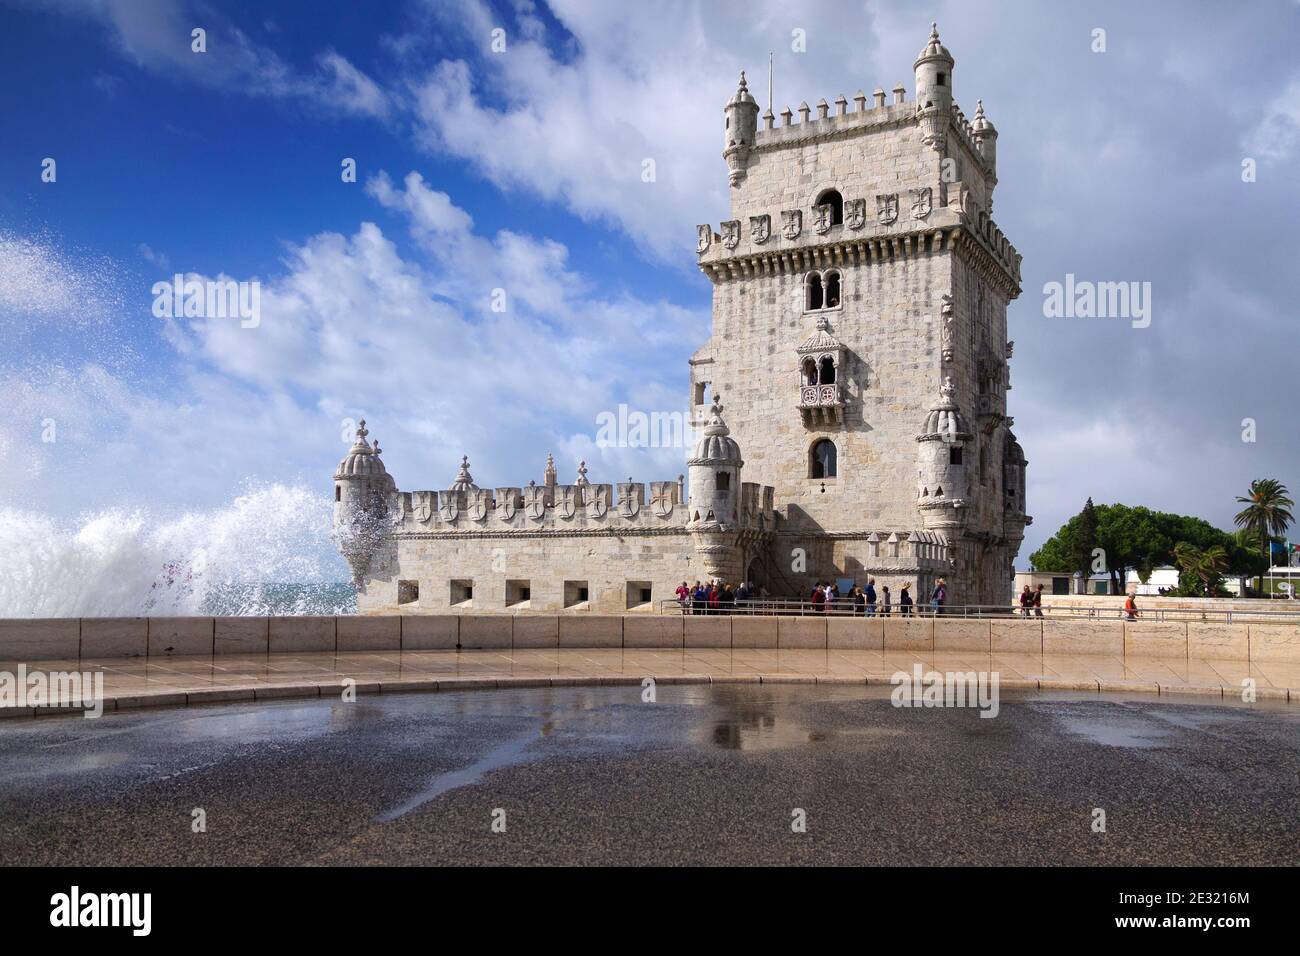 Vorderansicht des Belem Turms in Lissabon an einem Tag rauer Meere. Blauer Himmel und Wolken. Leerzeichen für Text. Stockfoto